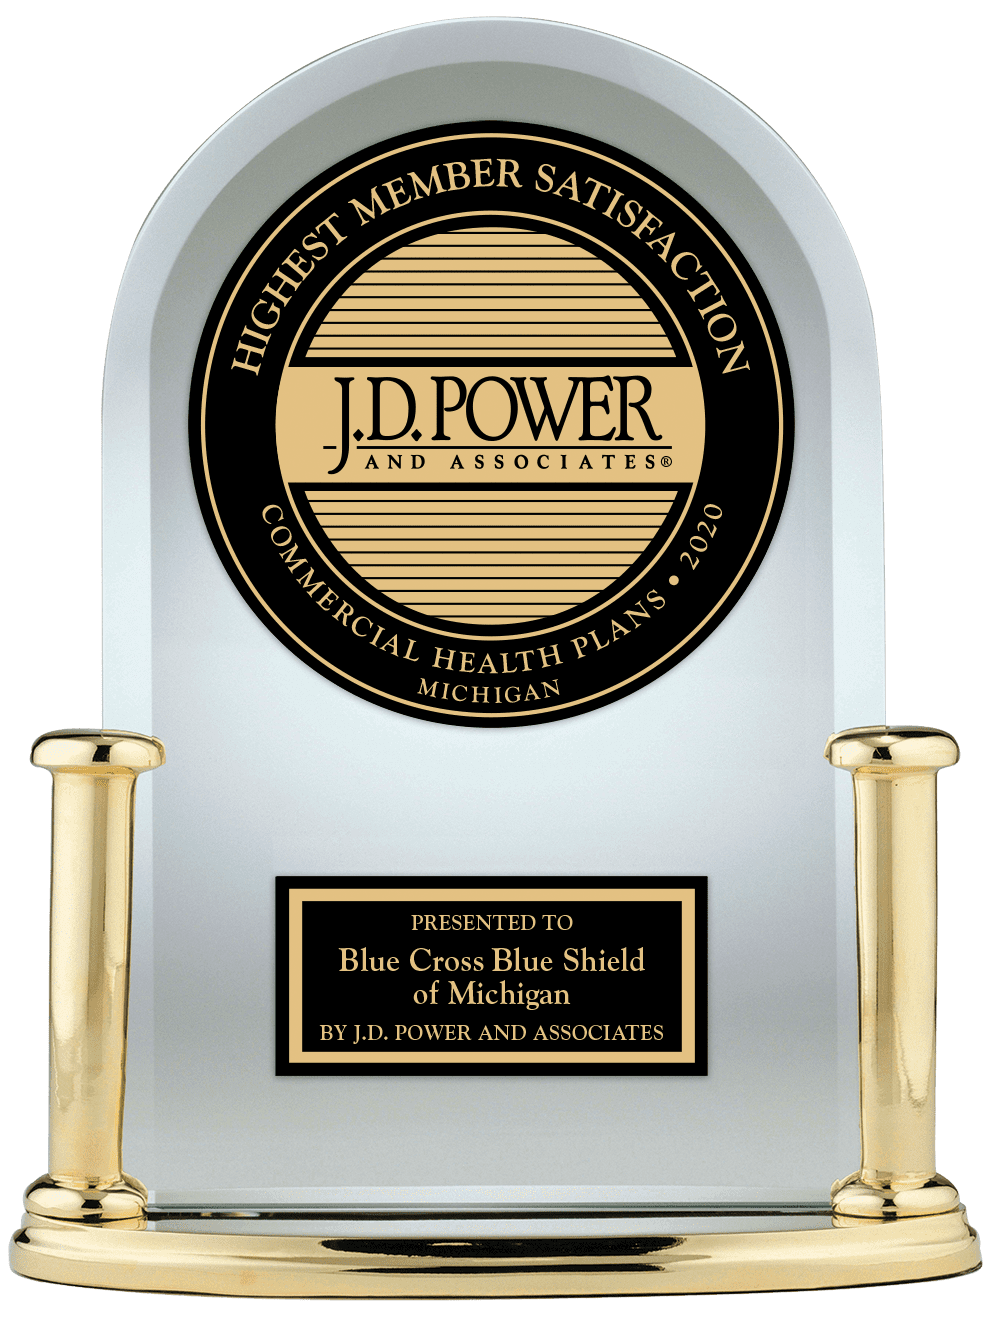 JD Power Trophy